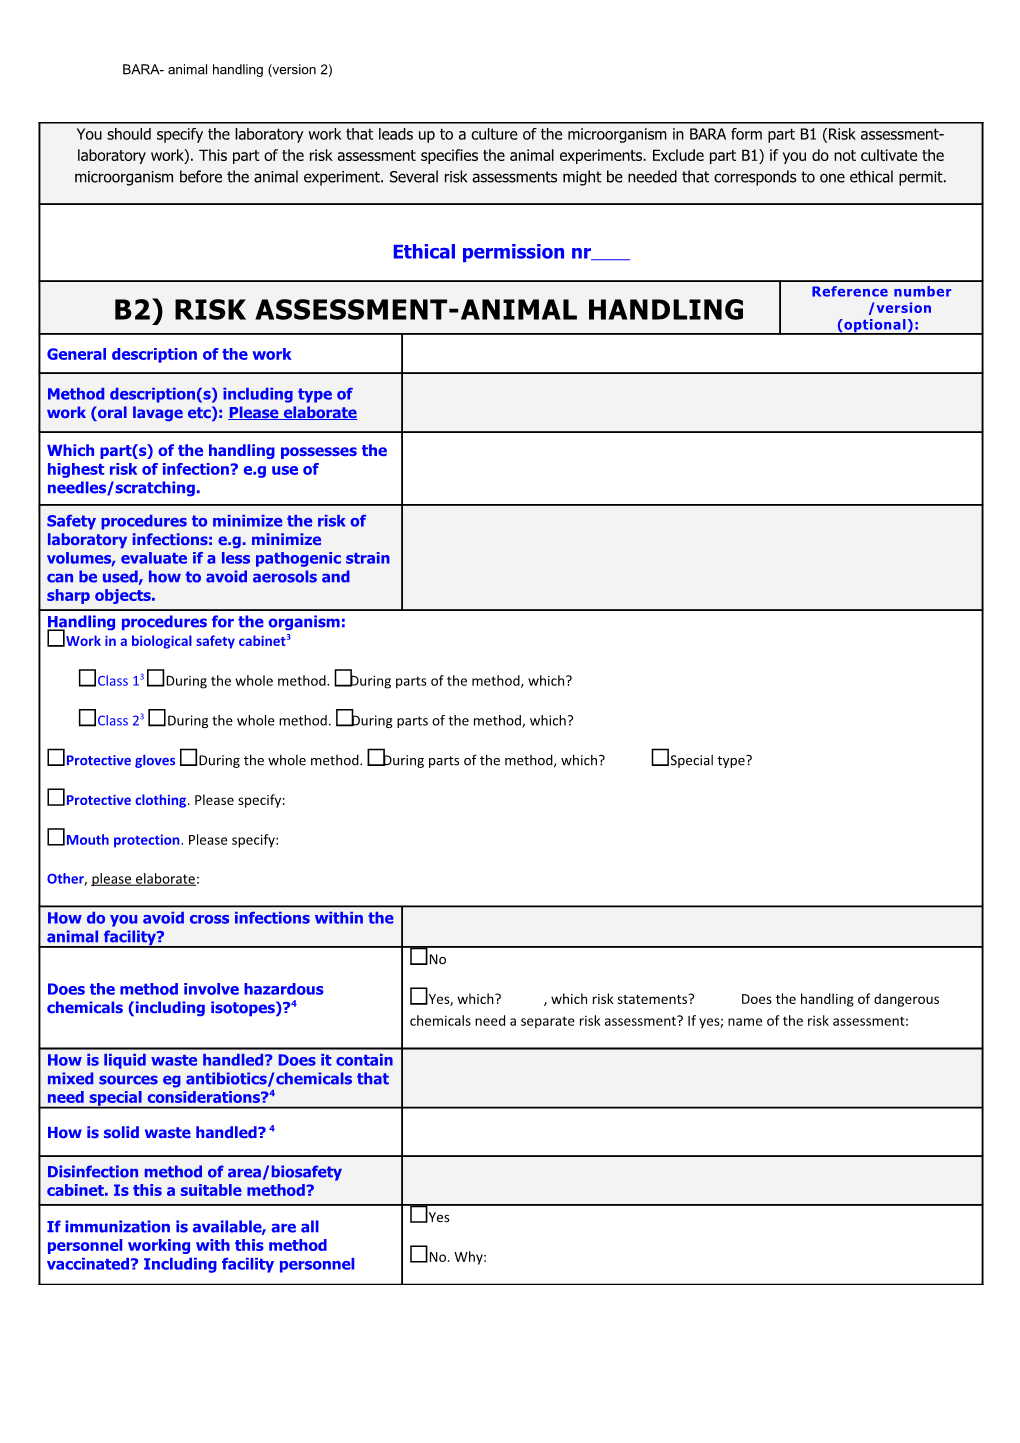 B2) Risk Assessment-Animal Handling